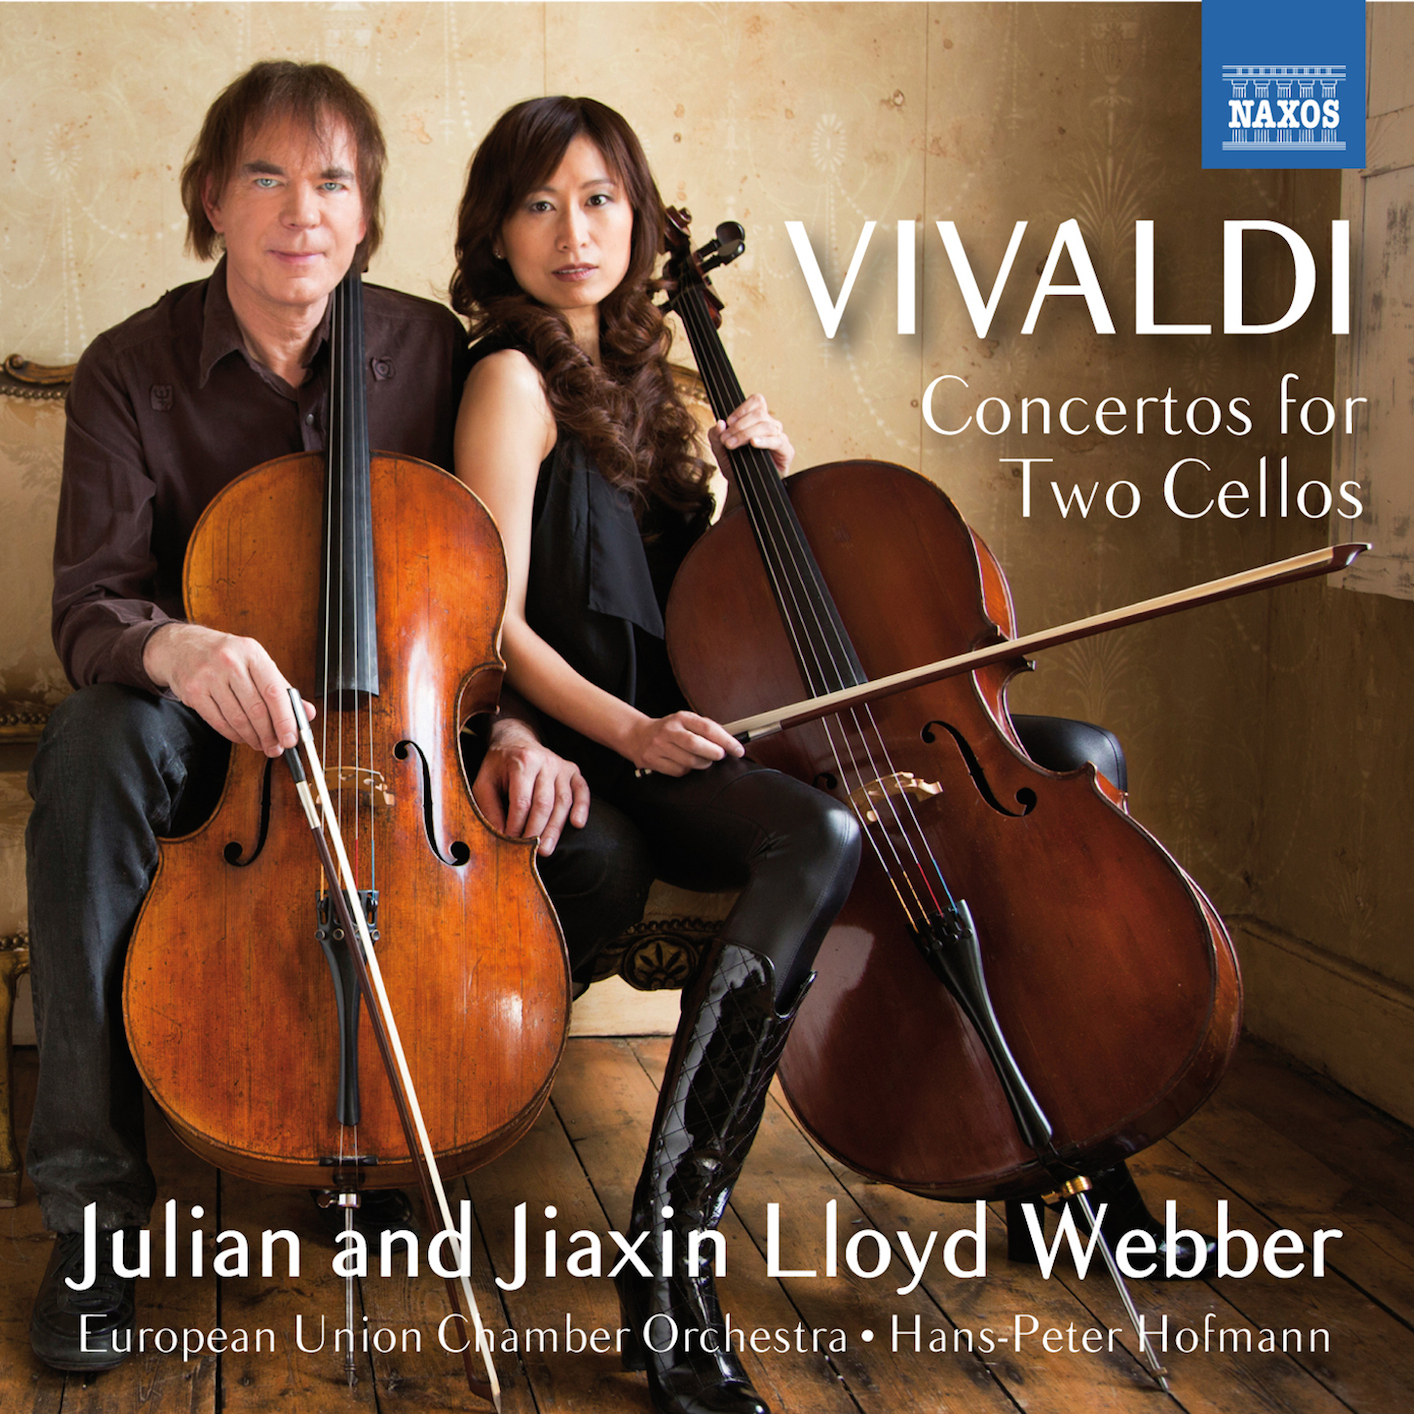 Vivaldi concerto for two cellos